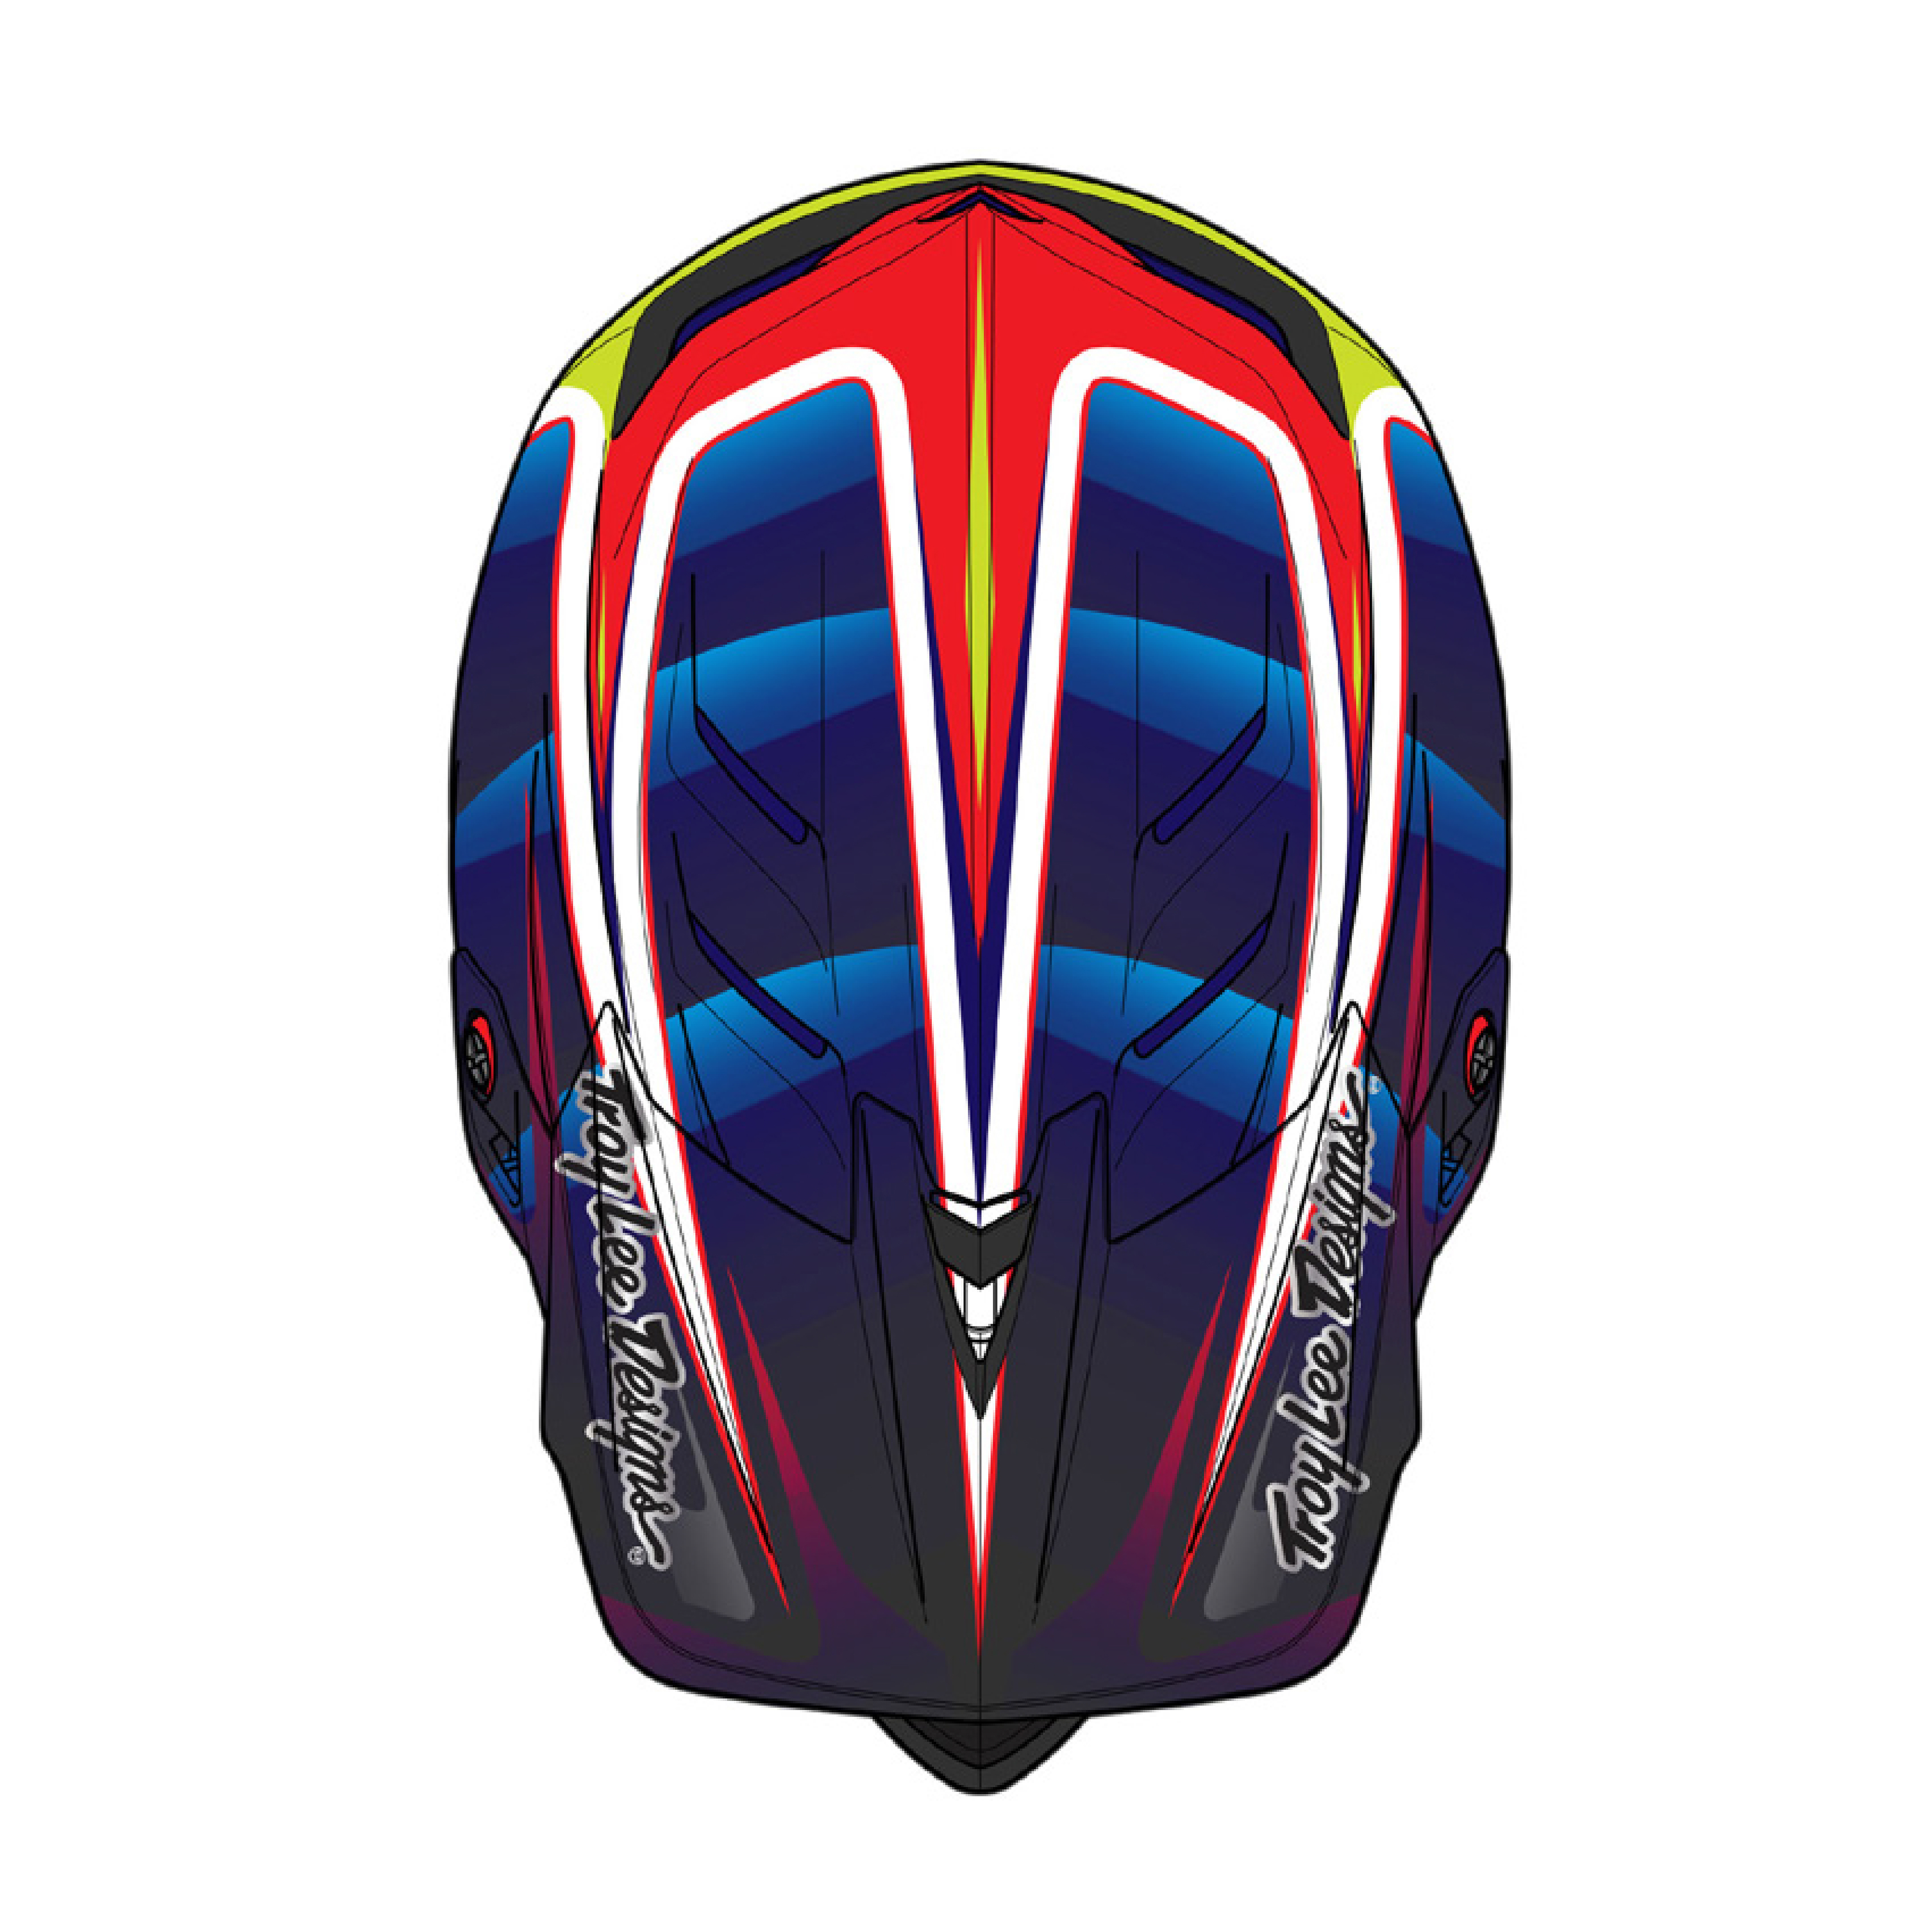 트로이리 디자인 D4 카본 헬멧 (라인 블랙/레드)